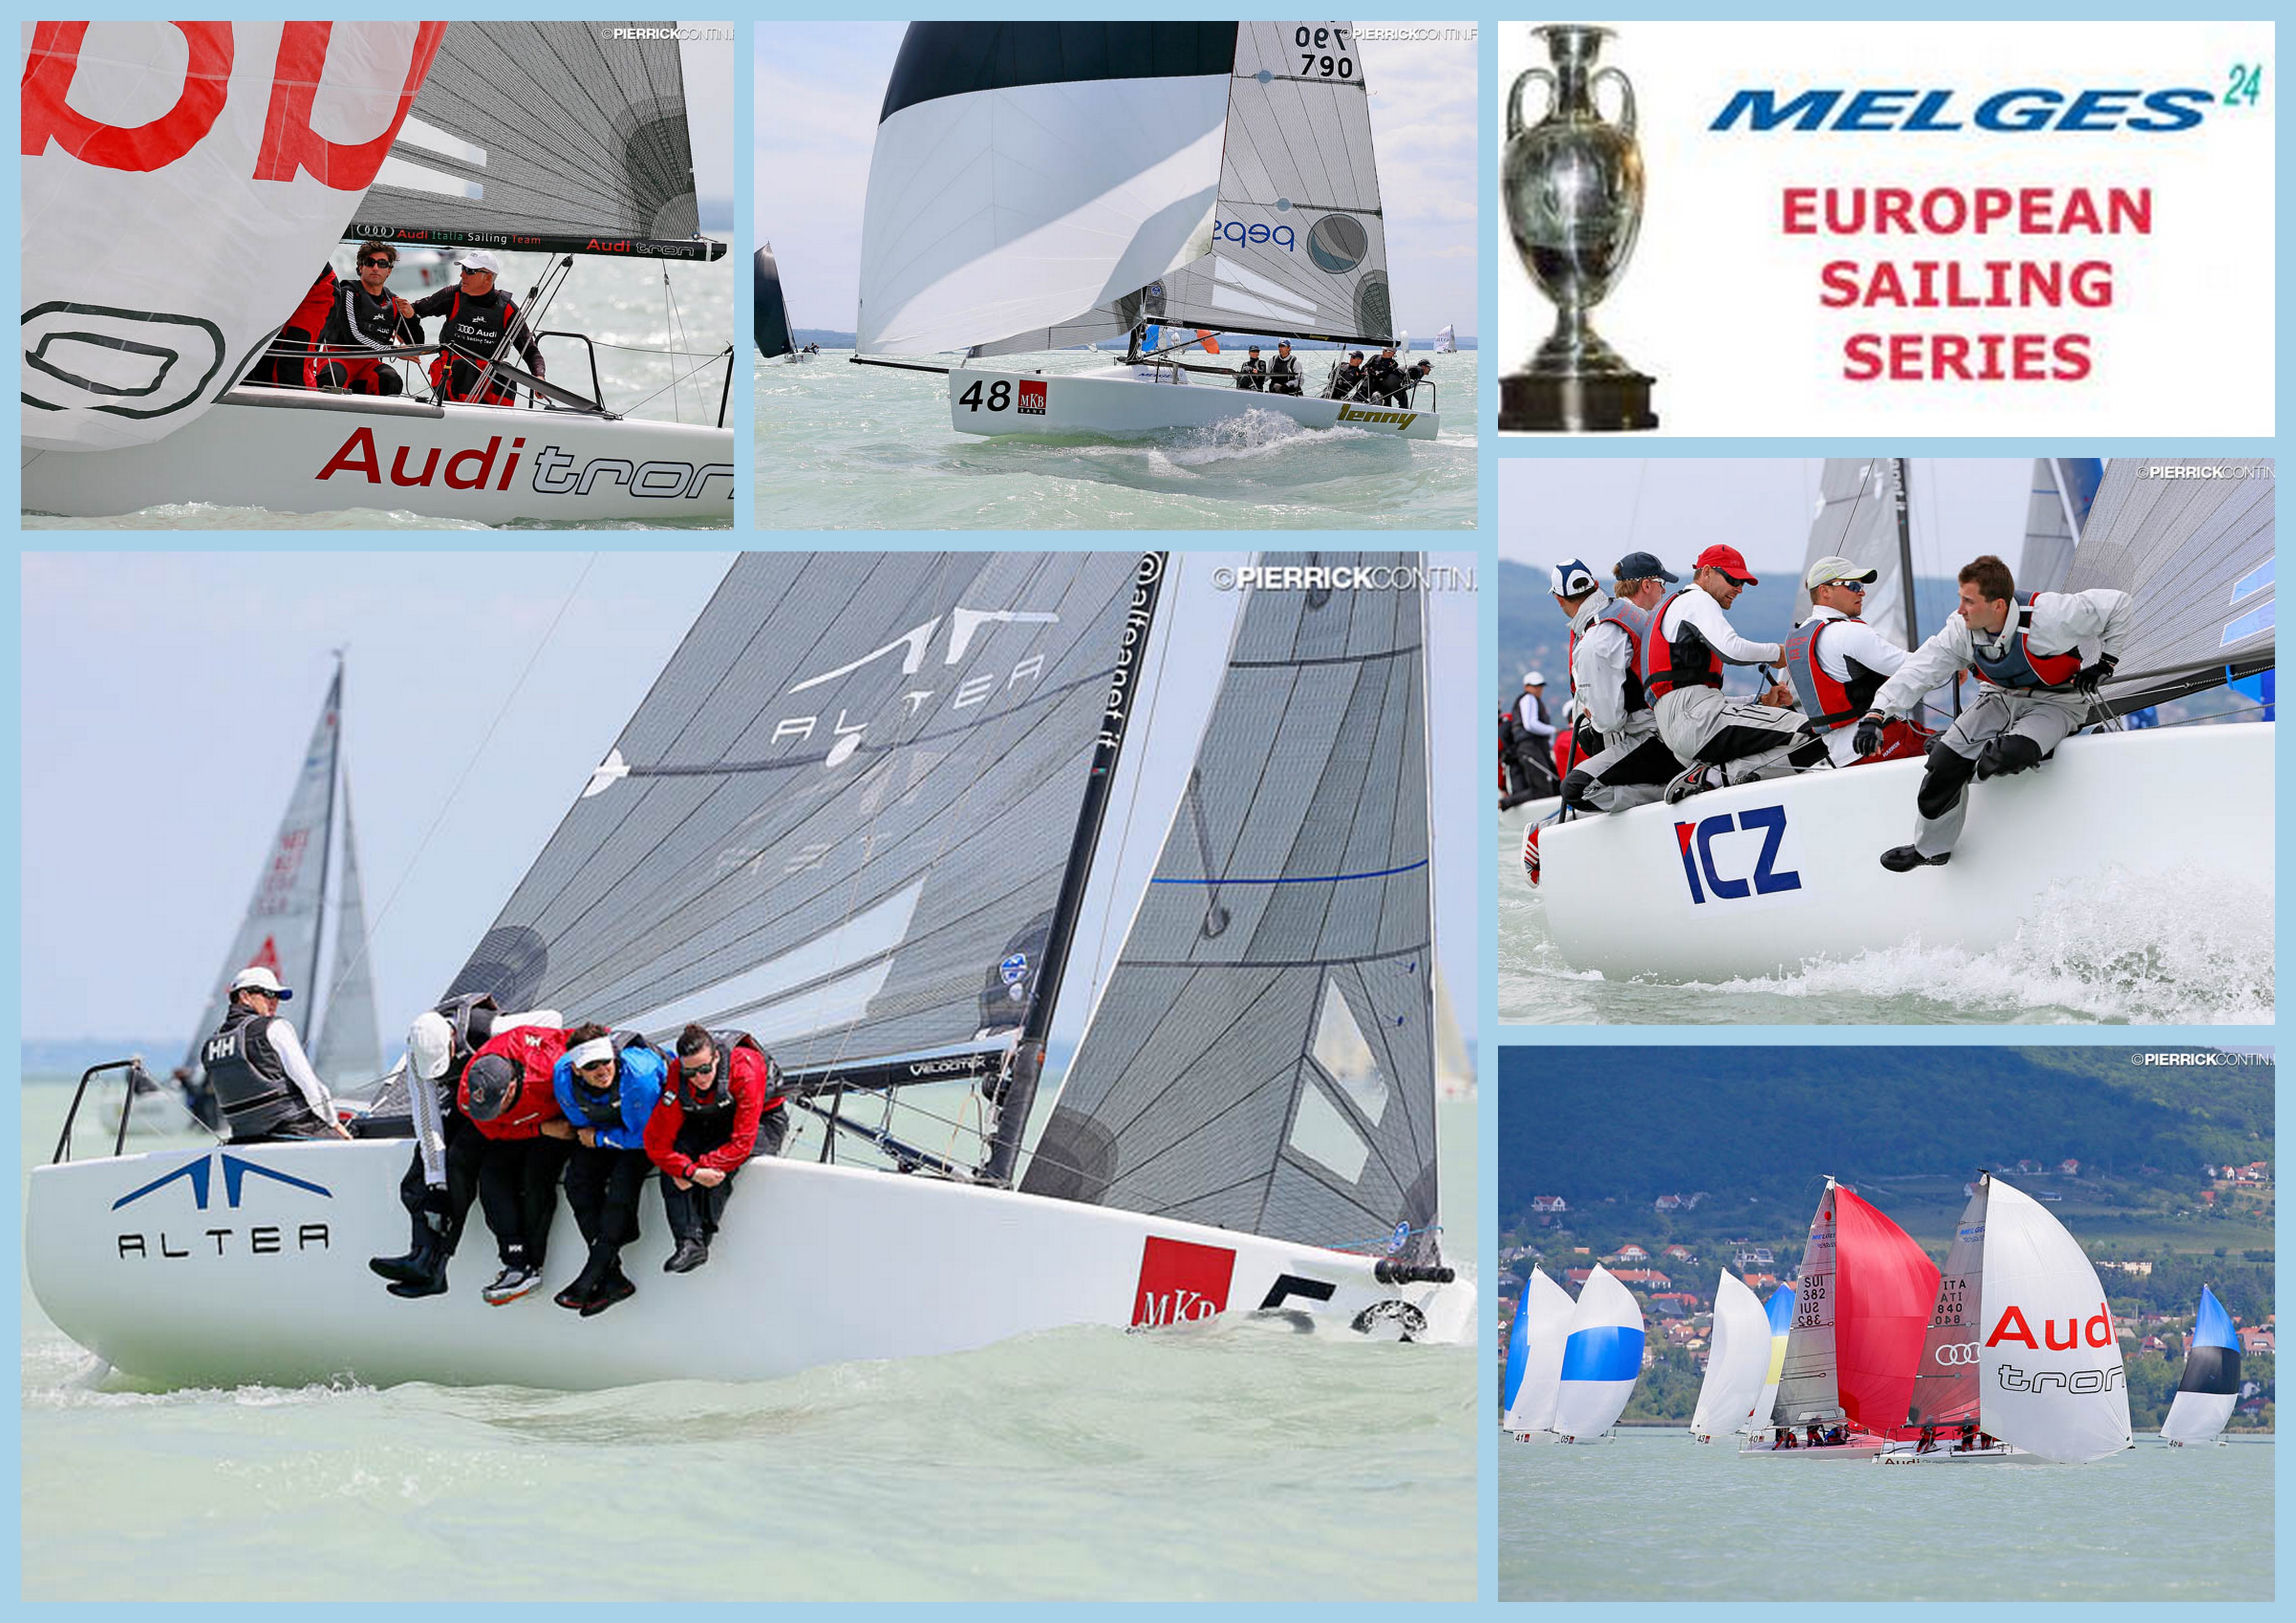 Melges 24 European Sailing Series 2014